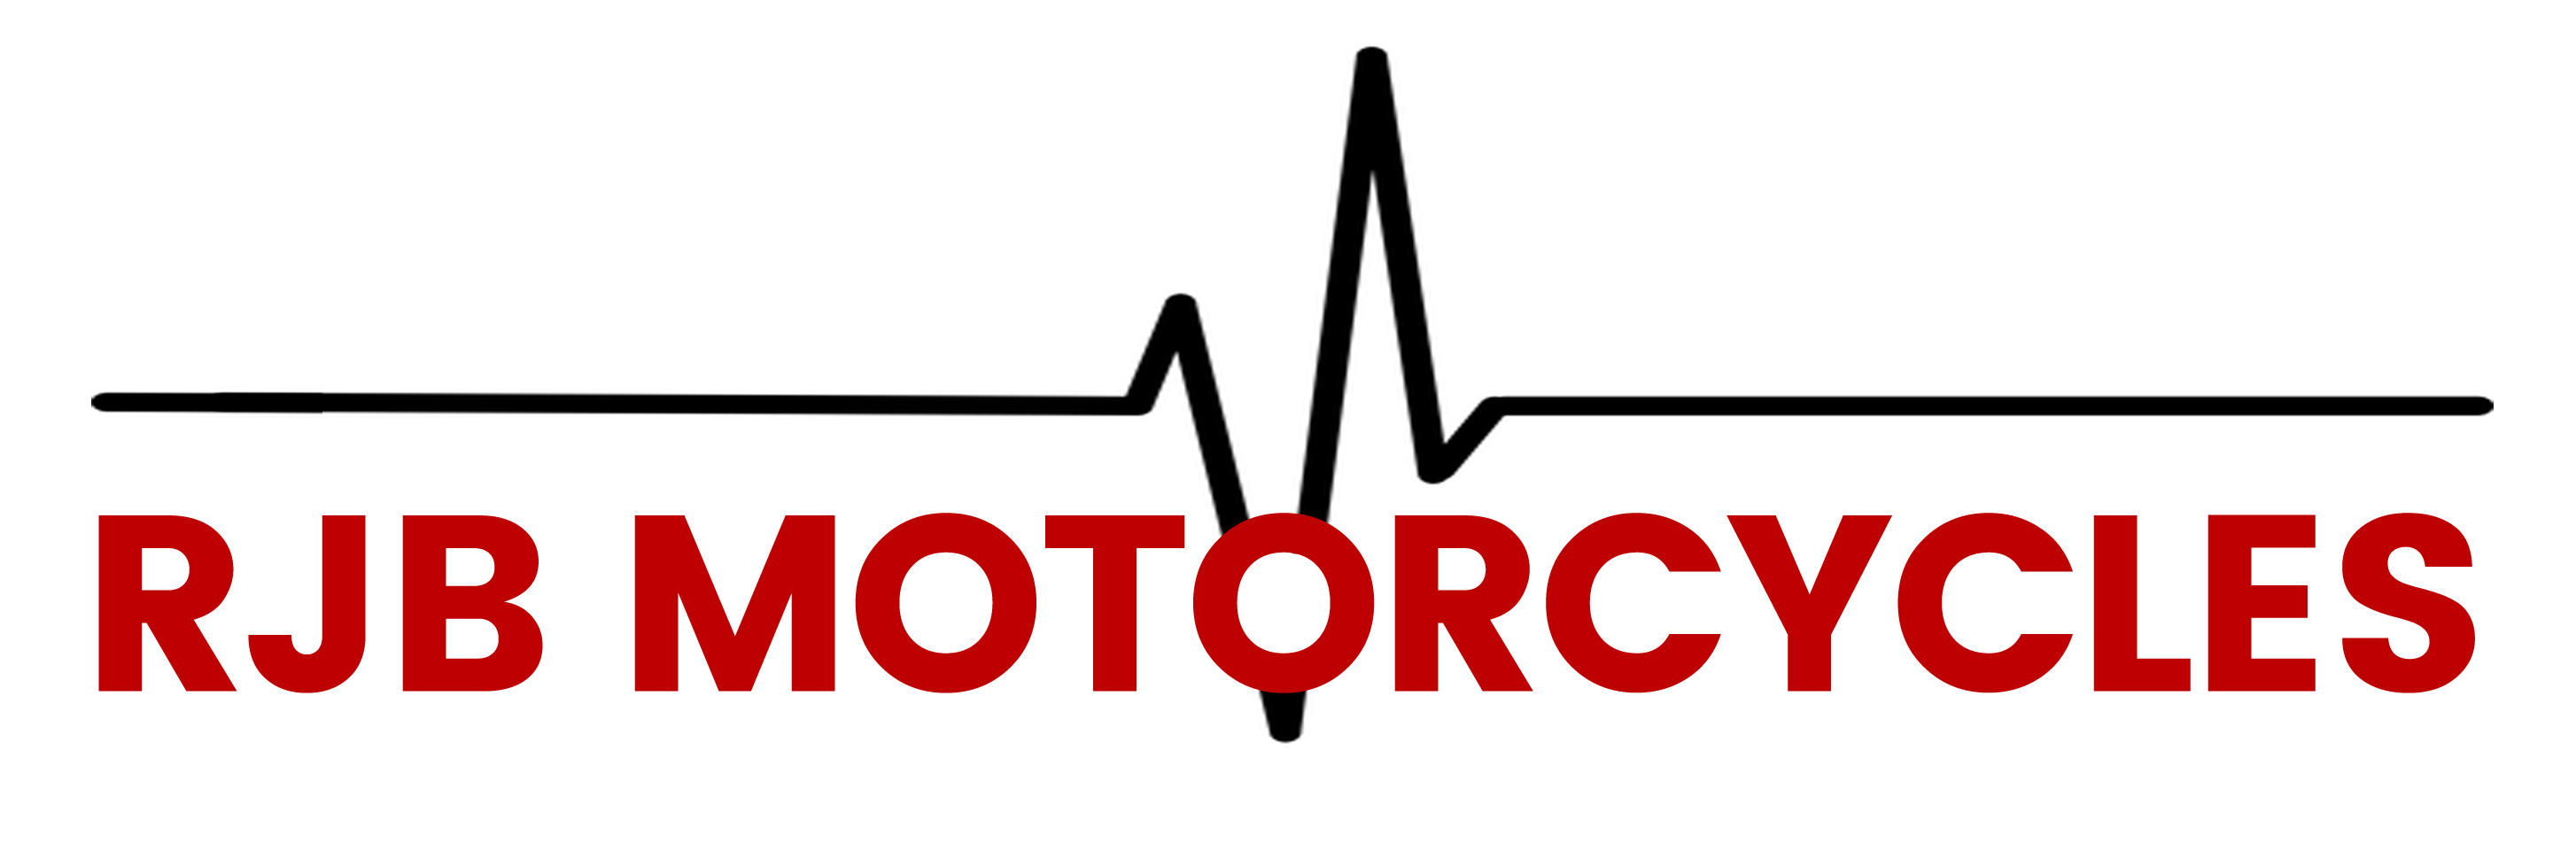 RJB Motocycles Logo